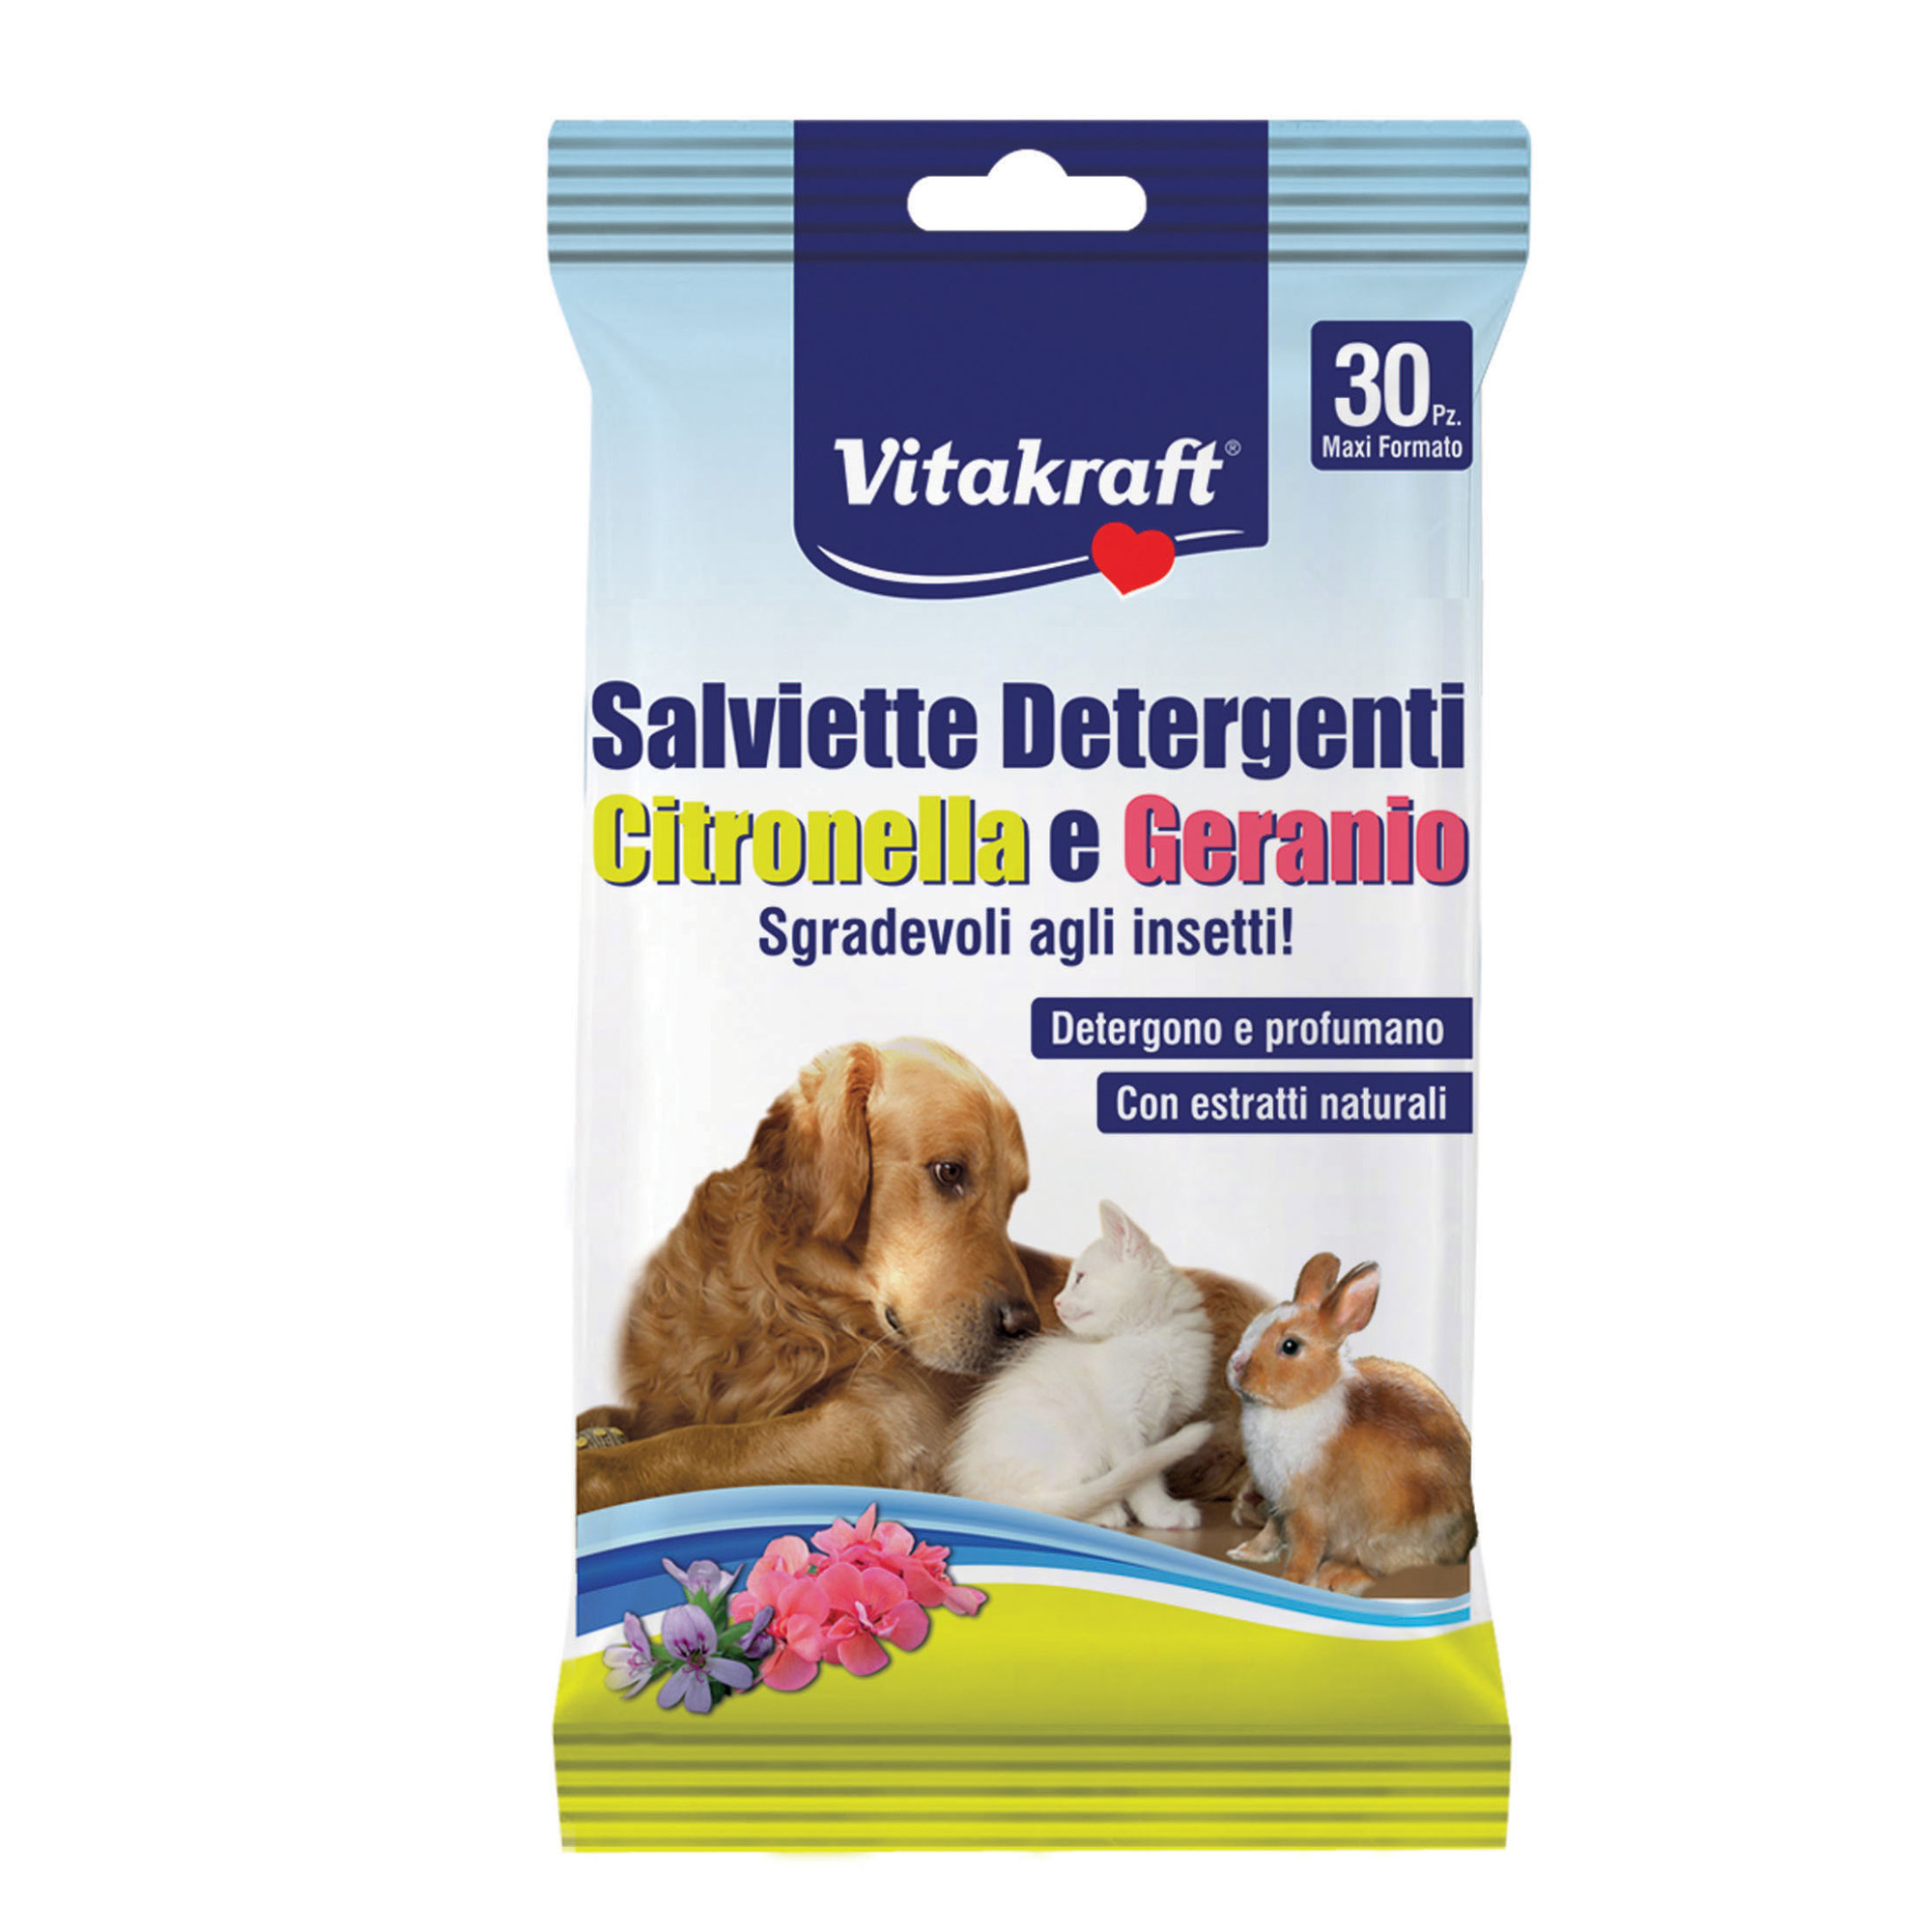 Salviette detergenti per pelo di animali (cani, gatti, roditori) - citronella e geranio - Vitakraft - conf. 30 pezzi